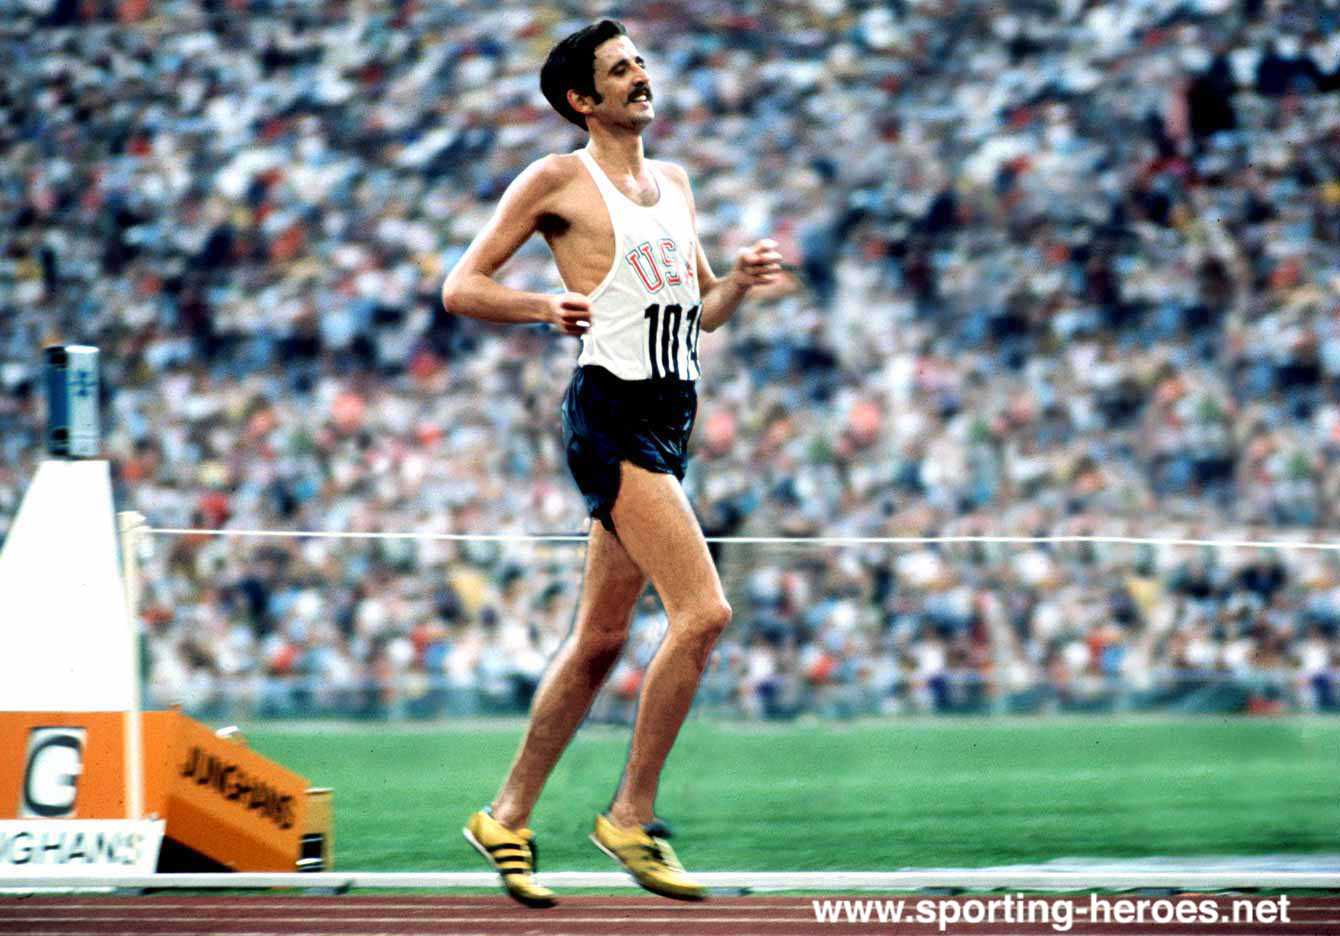 Maratoni csemege – Frank Shorter, aki miatt egész Amerika futócipőt húzott